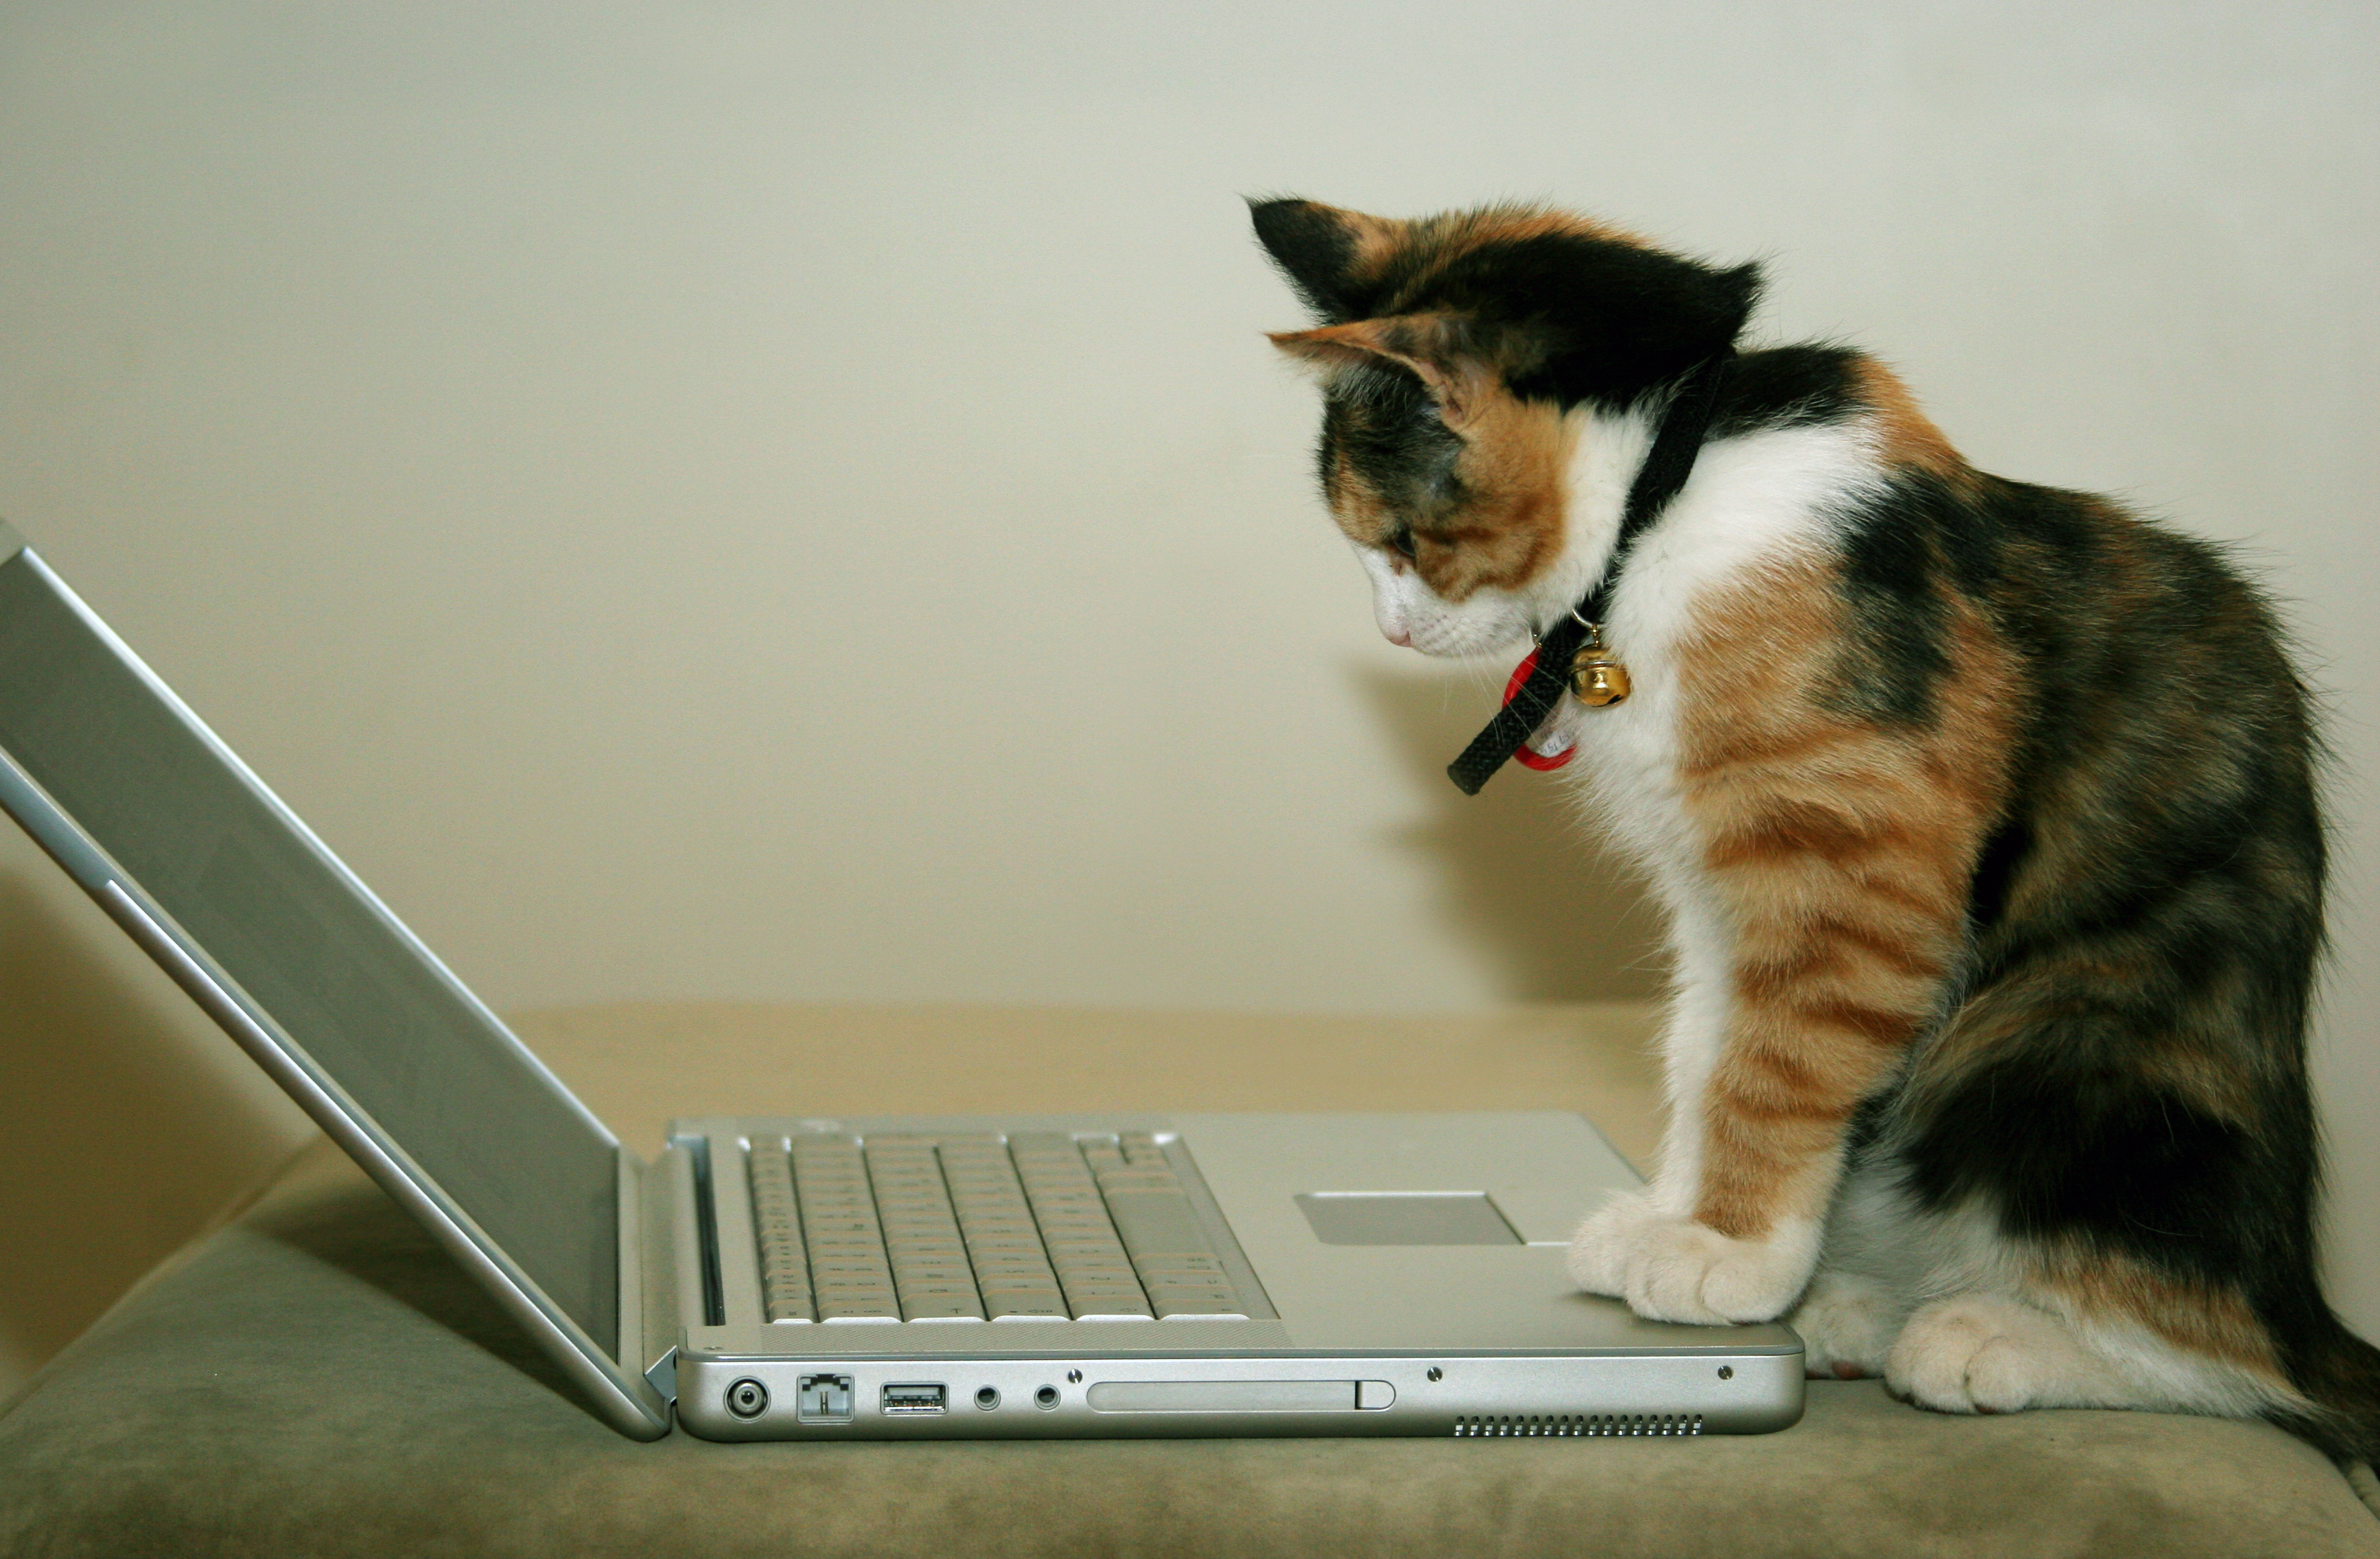 Трёхшёрстный (трёхцветный) котик за ноутбуком (компьютером, компом), фото на сером фоне